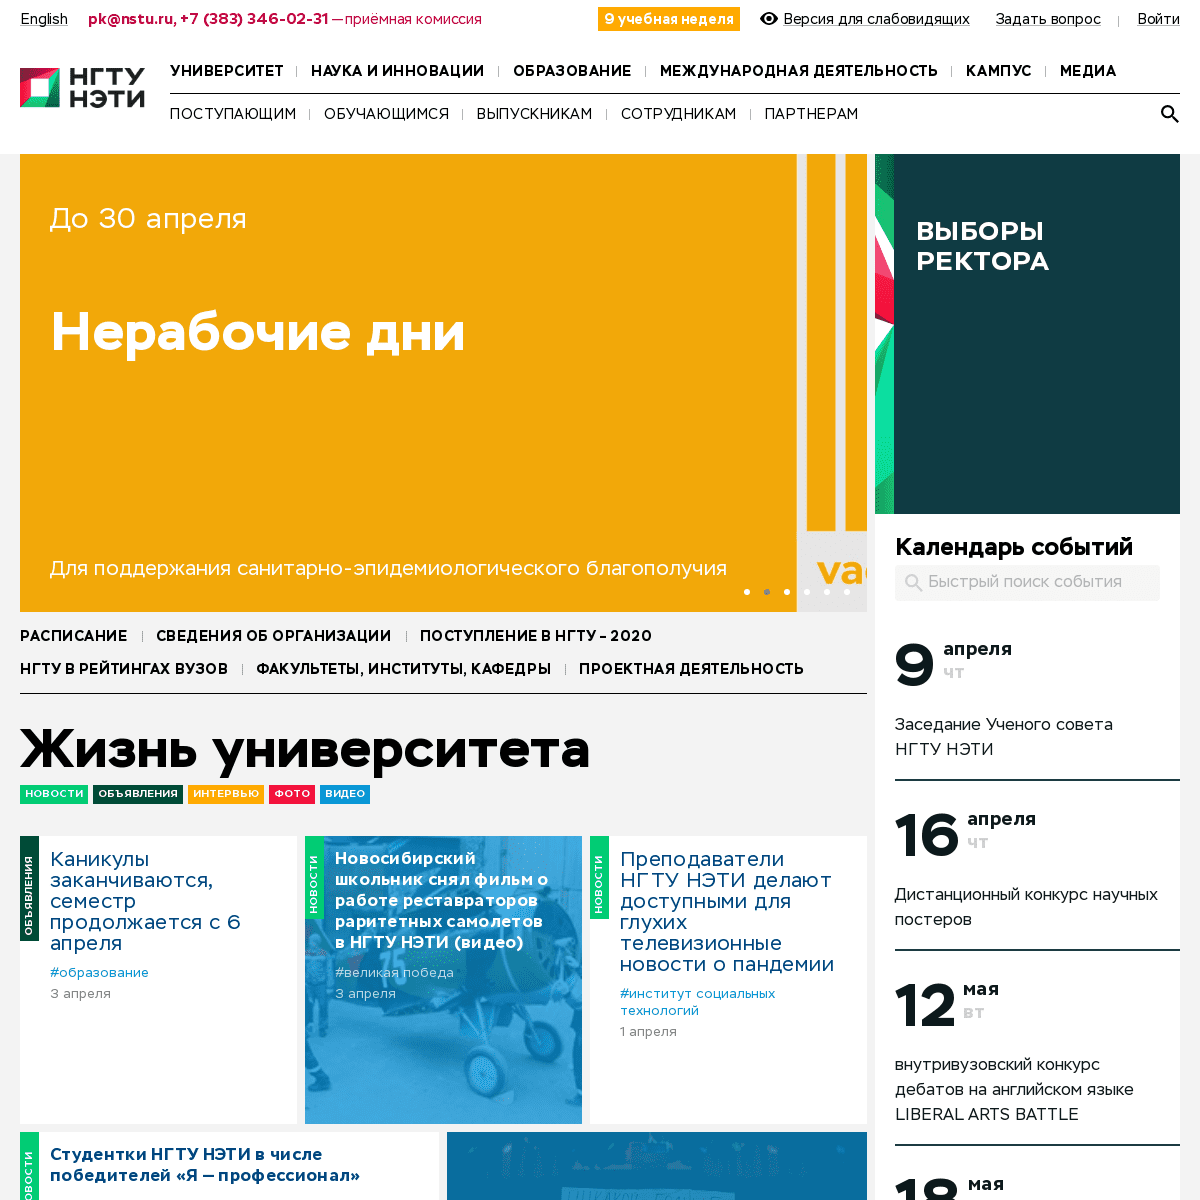 A complete backup of nstu.ru